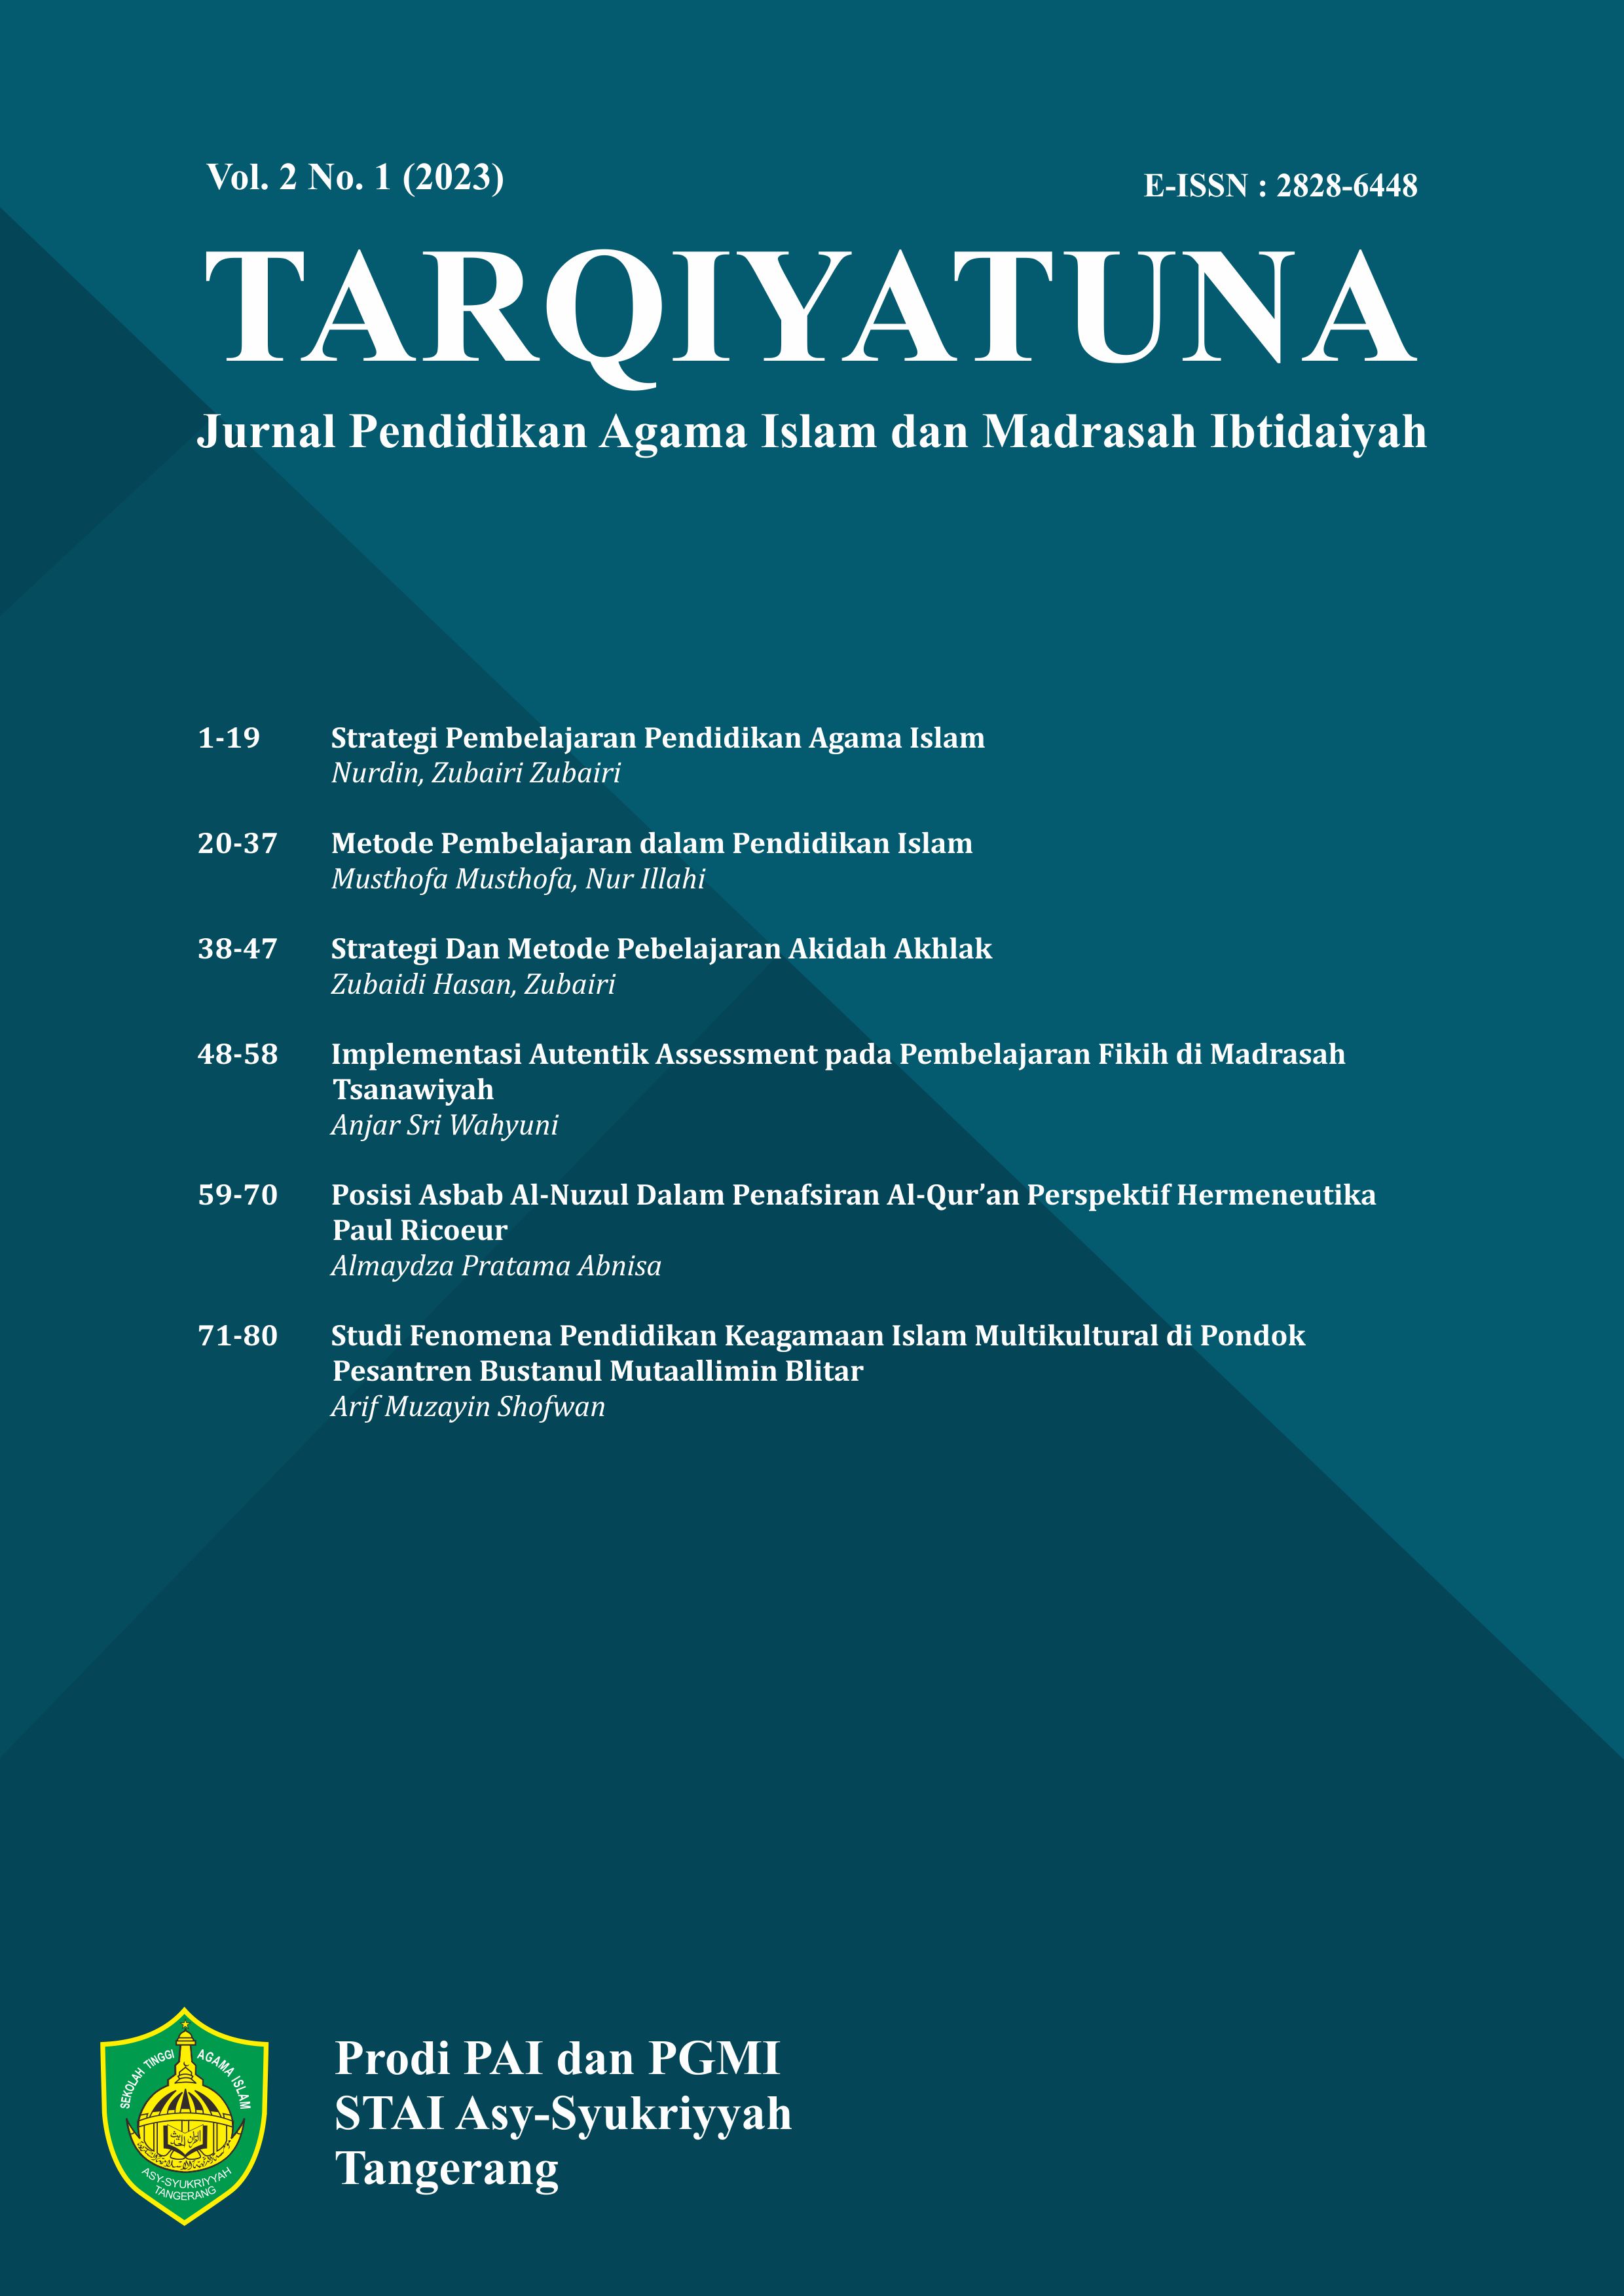 					View Vol. 2 No. 1 (2023): TARQIYATUNA: Jurnal Pendidikan Agama Islam dan Madrasah Ibtidaiyah
				